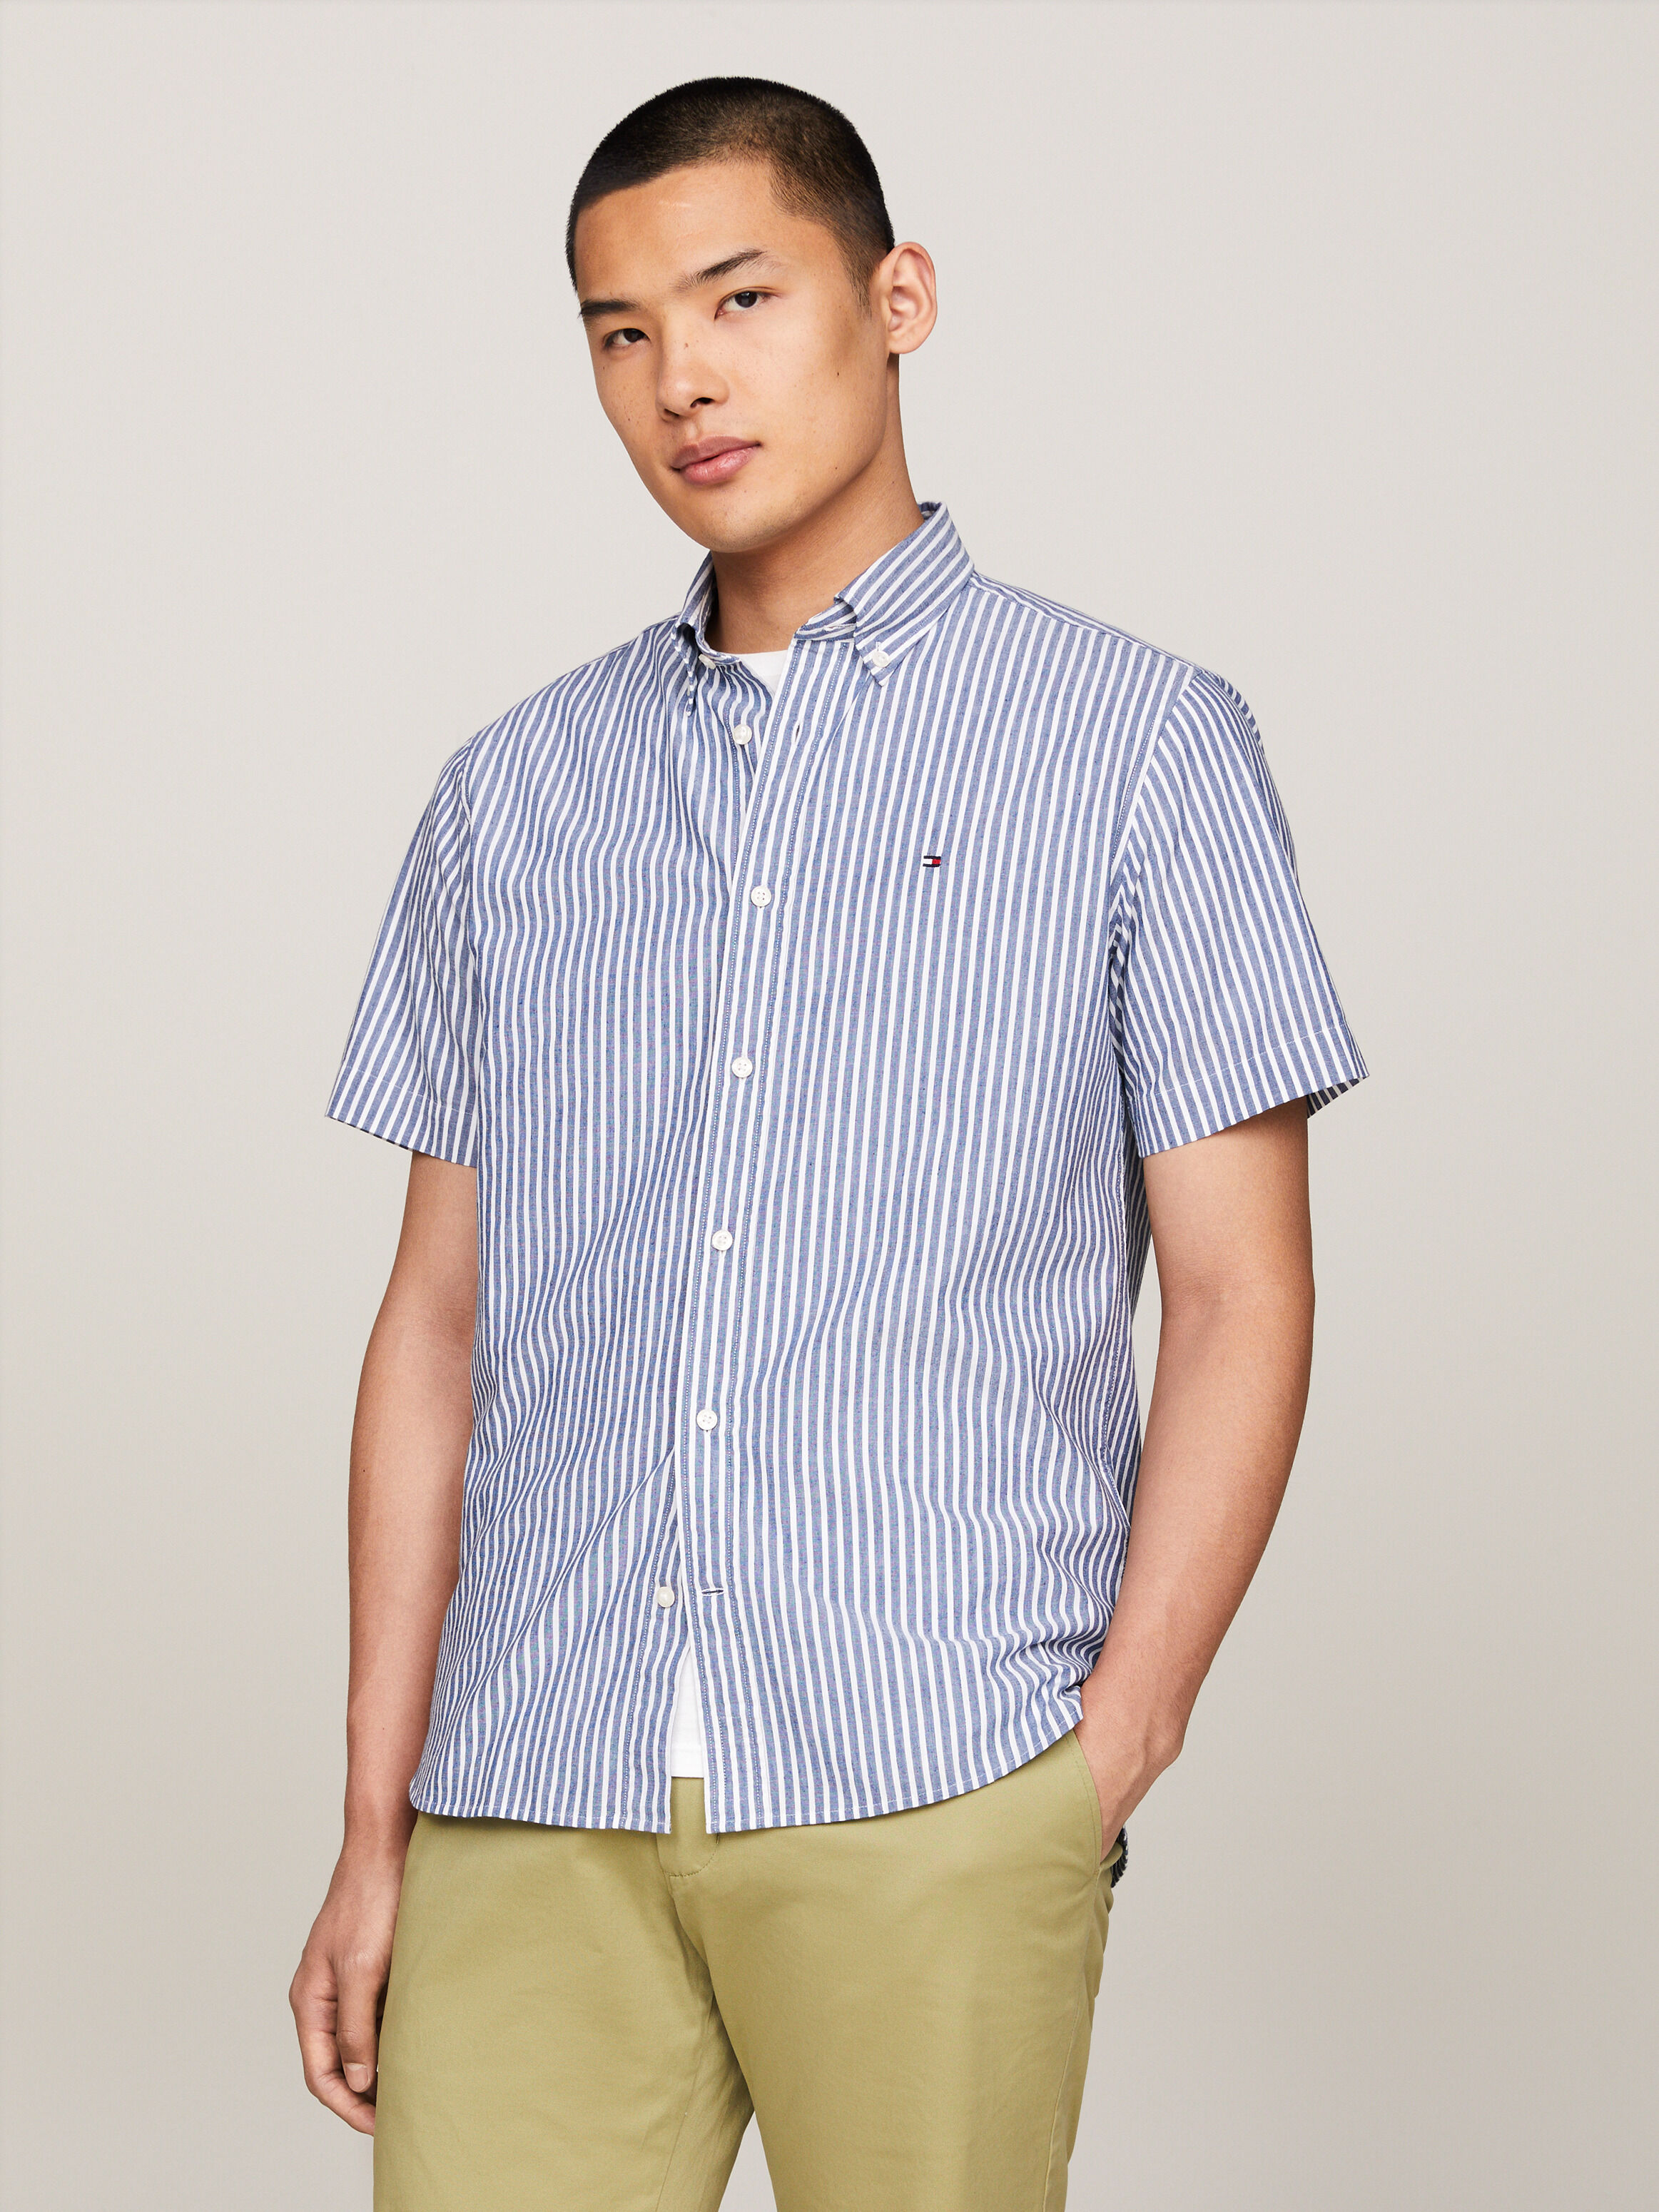 條紋常規版型短袖襯衫 Anchor Blue / Optic White